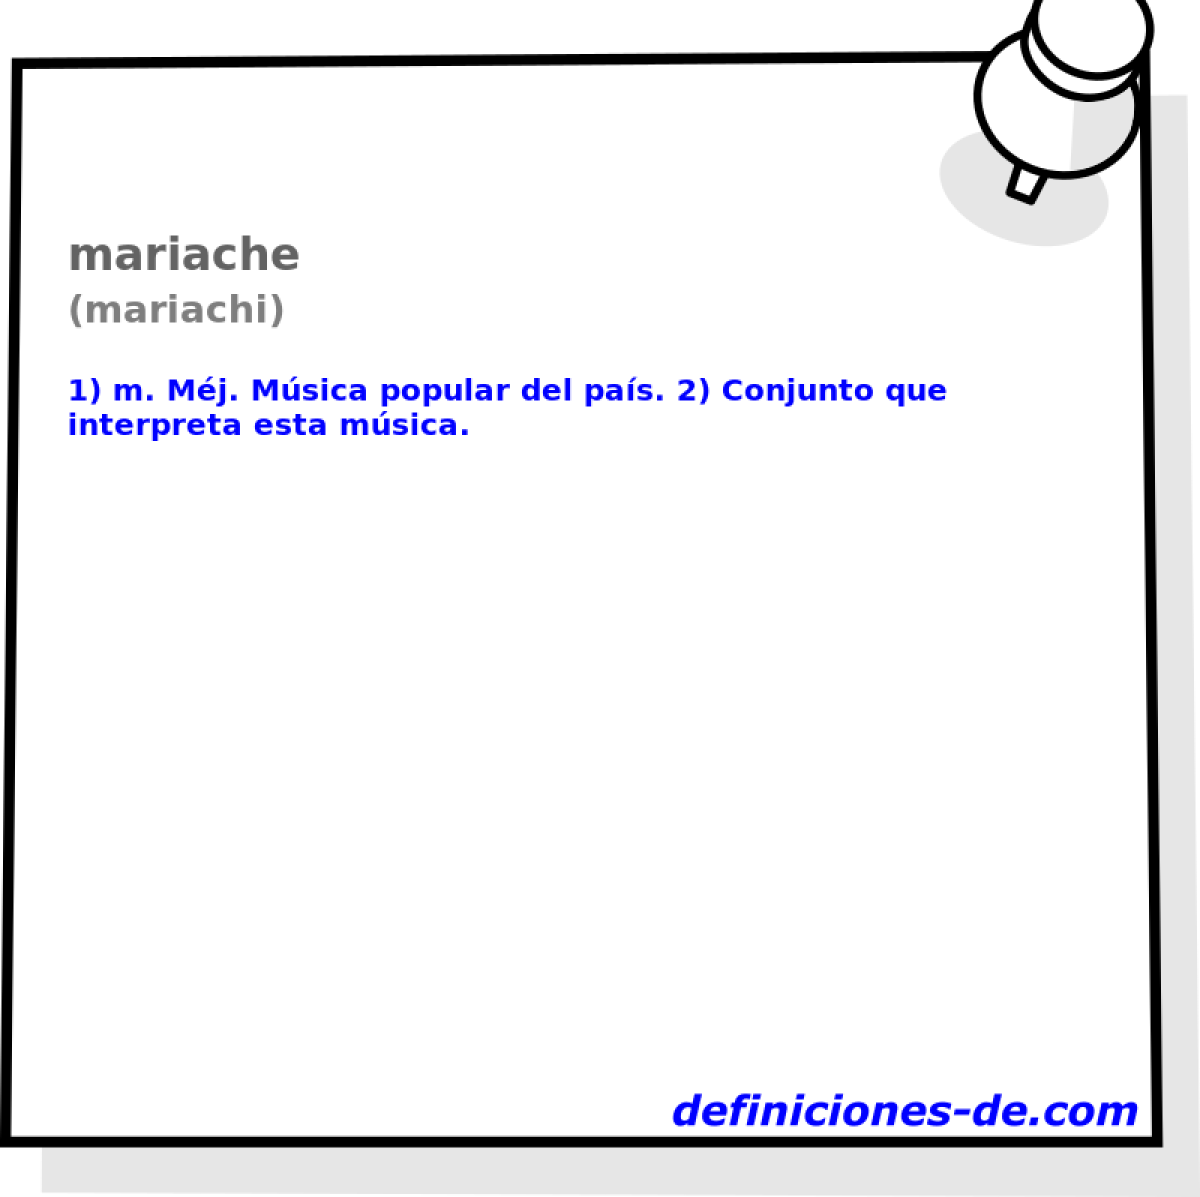 mariache (mariachi)